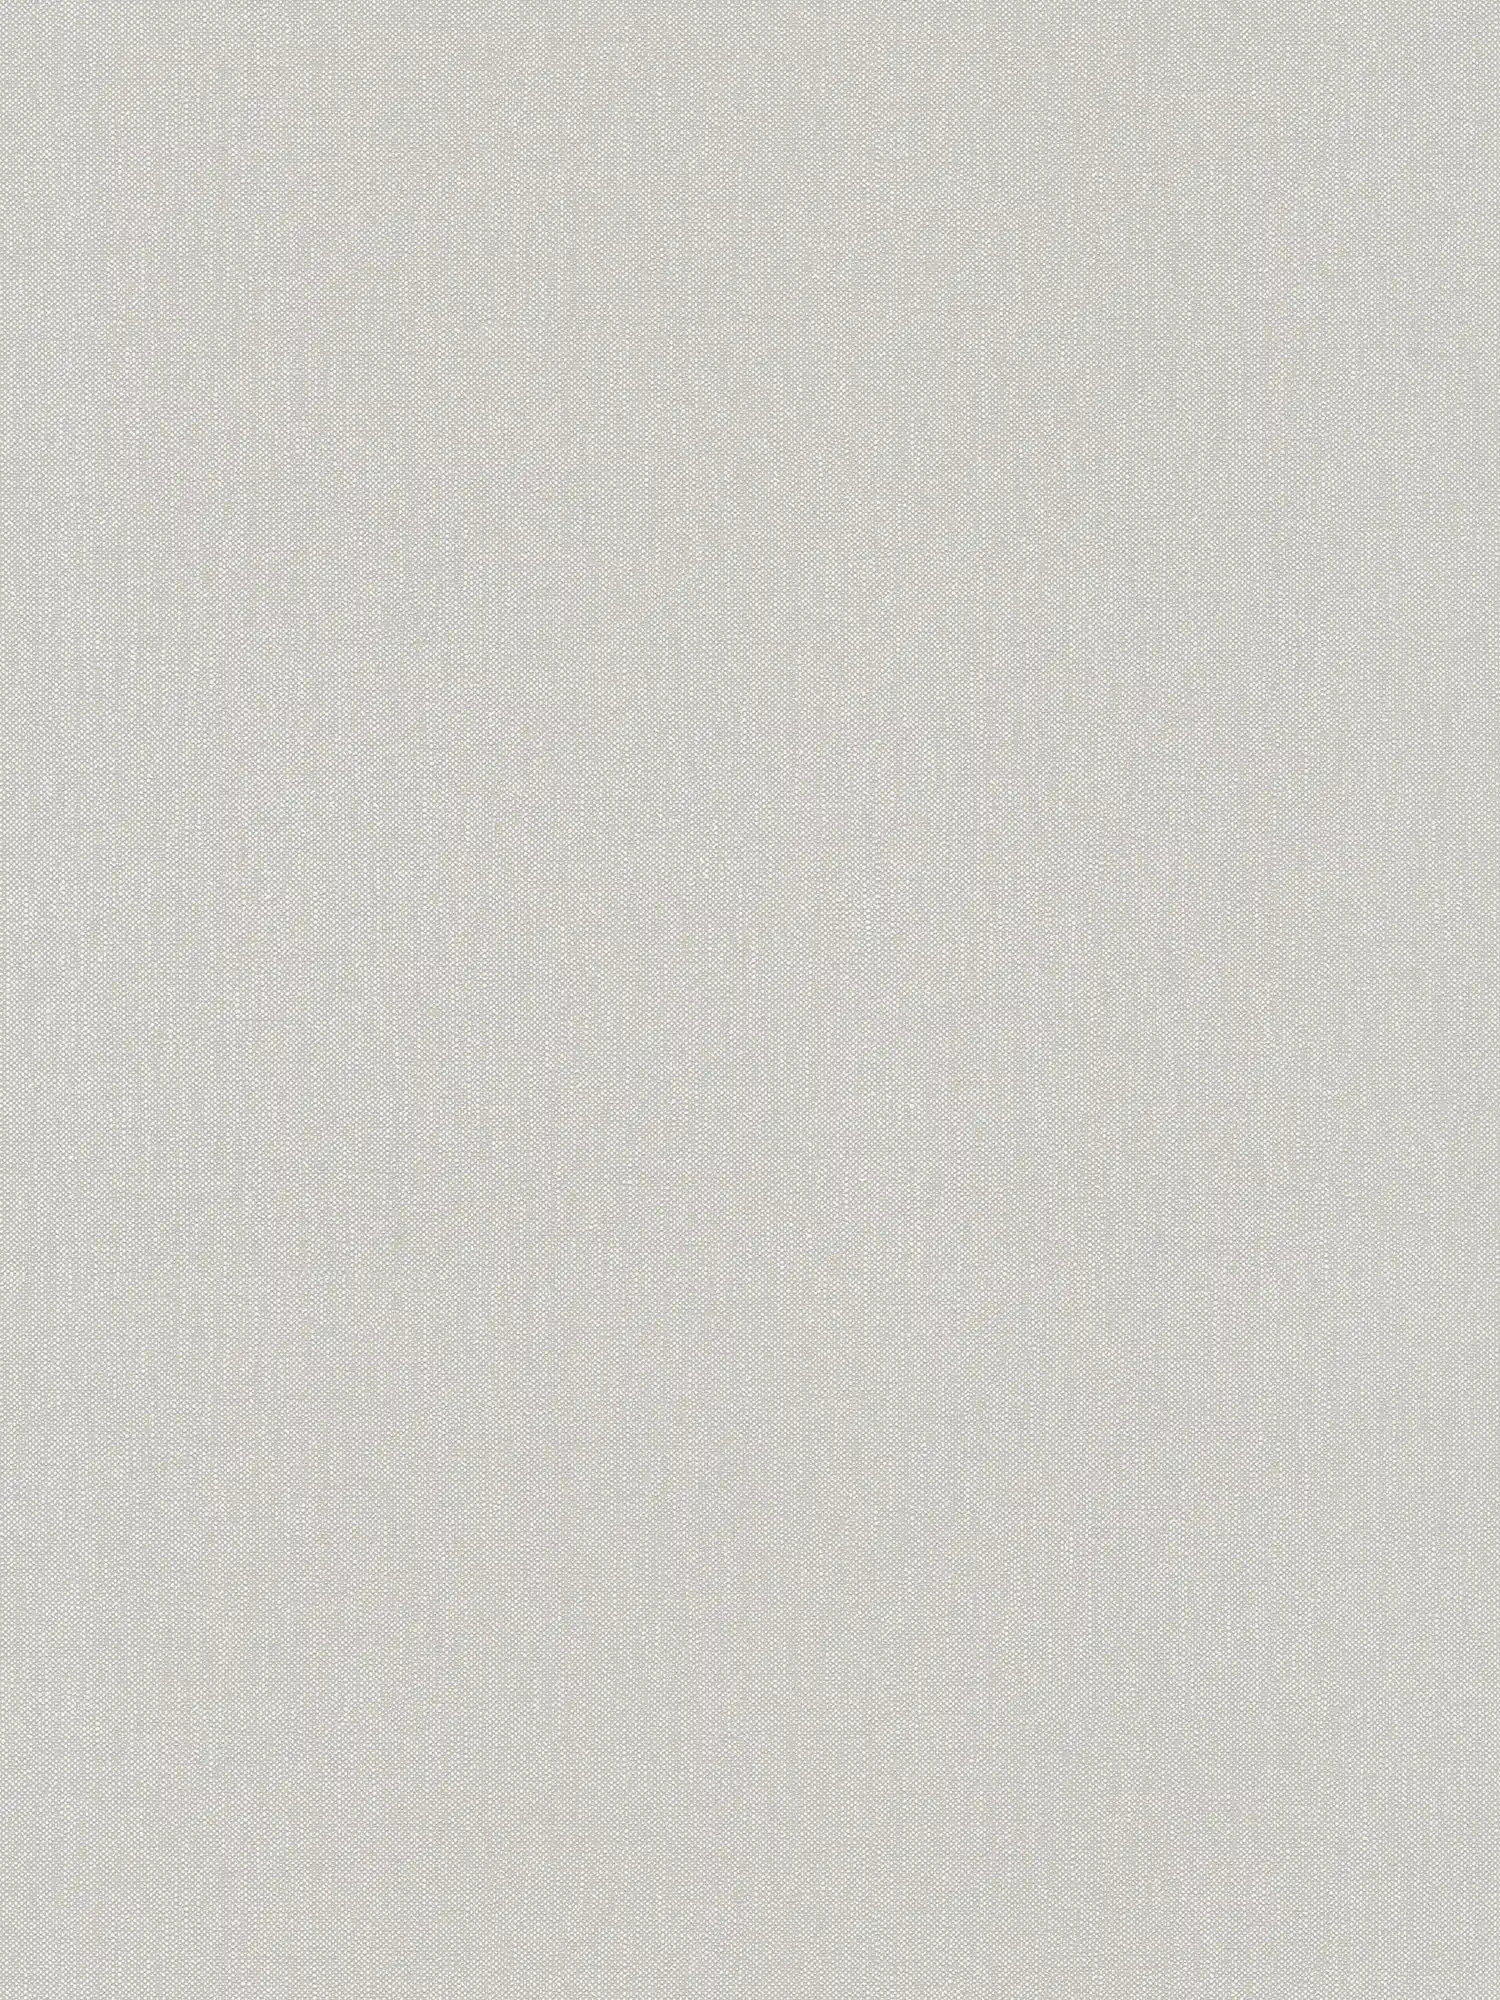 Papier peint aspect lin Beige avec motif textile texturé
